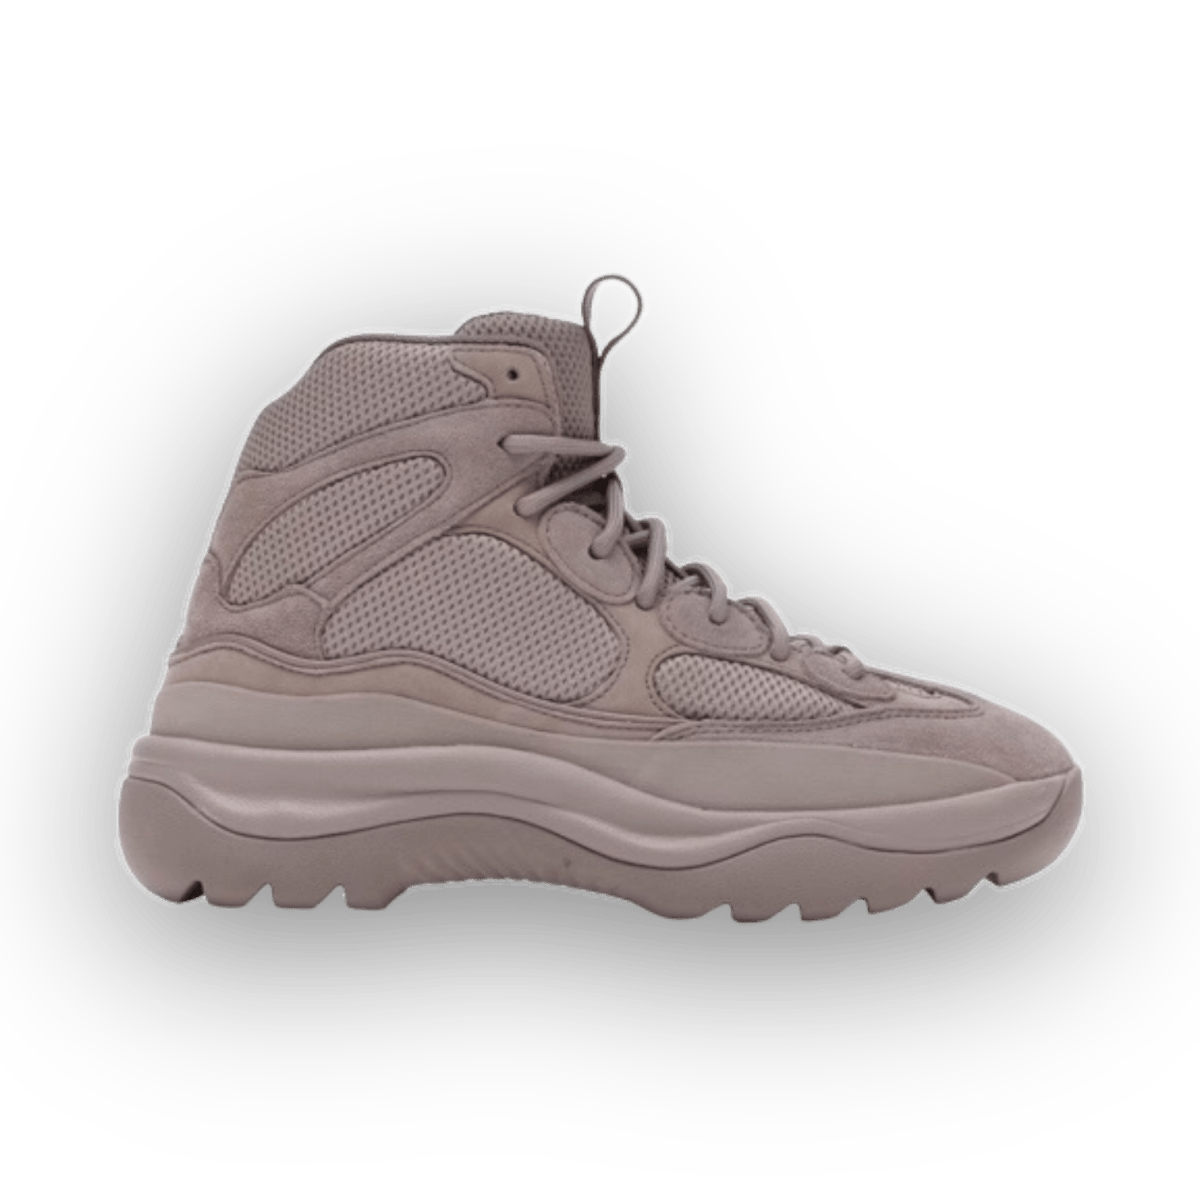 Yeezy Desert Boot Season 7 Cinder - High Sneaker - Jawns on Fire Sneakers & Streetwear